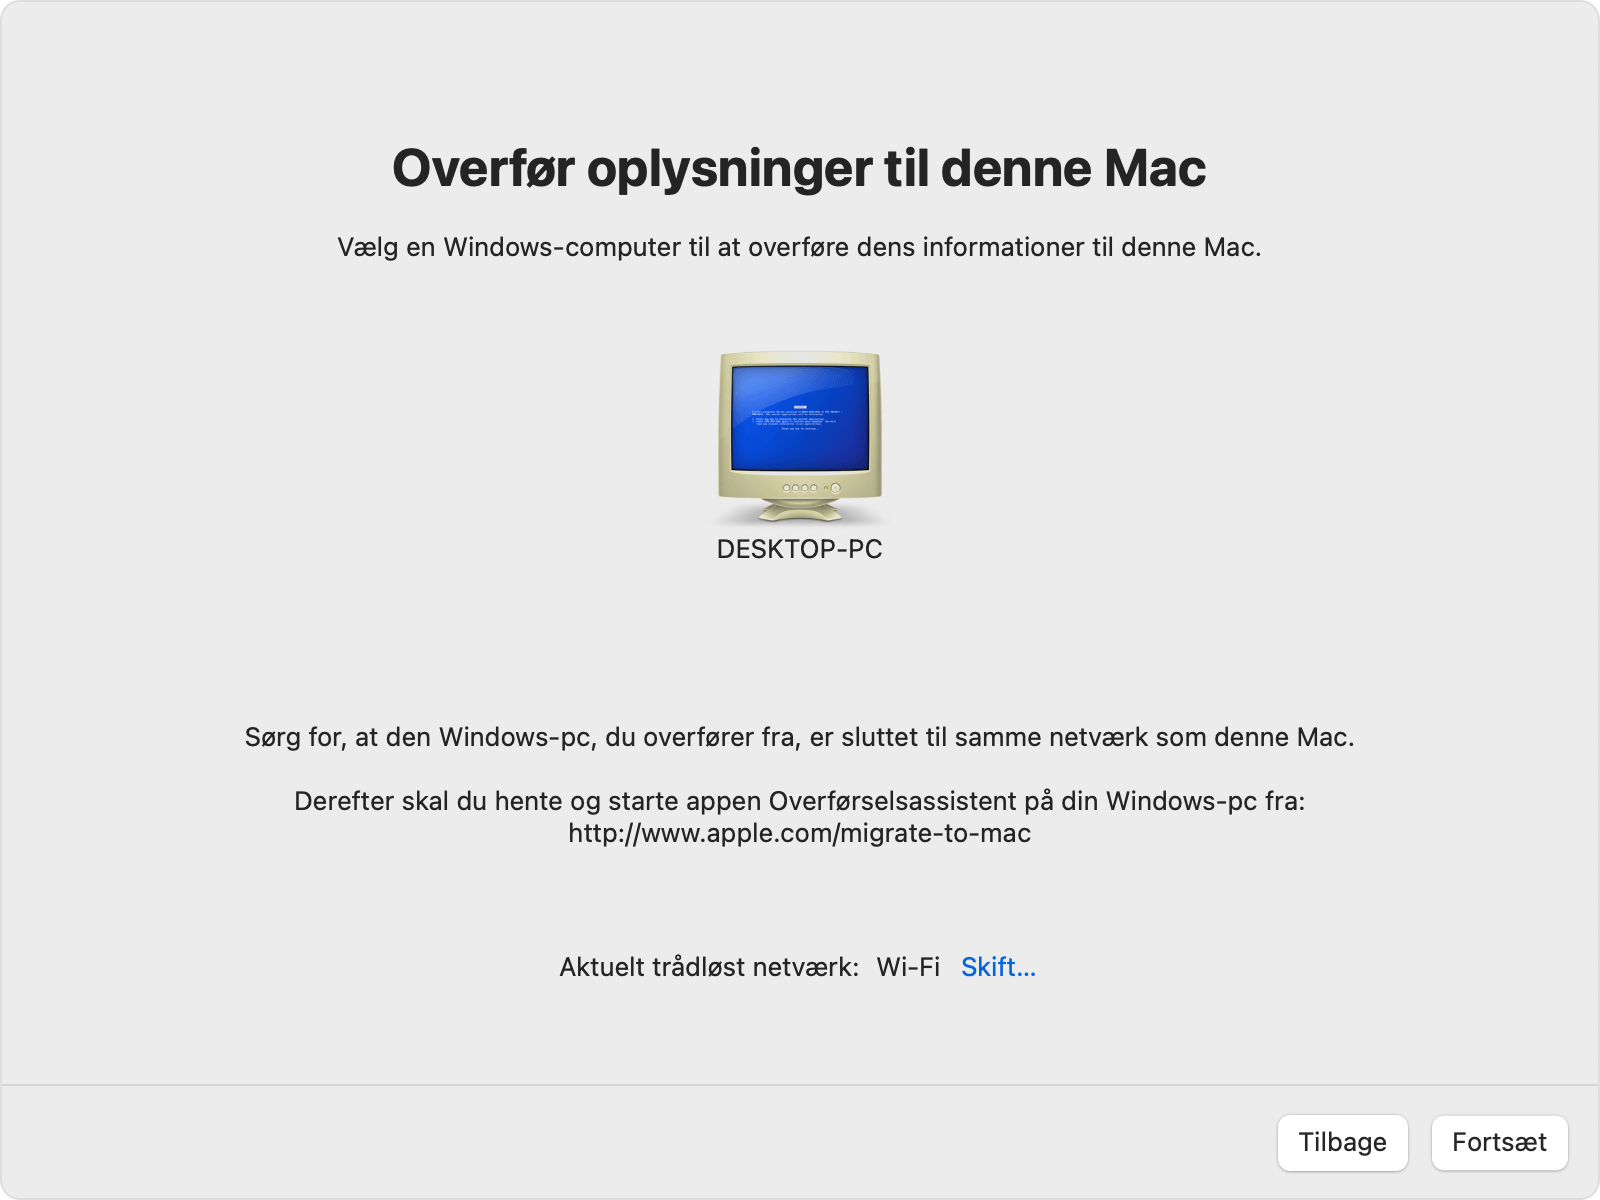 Overførselsassistent på Mac: Vælg en Windows-computer